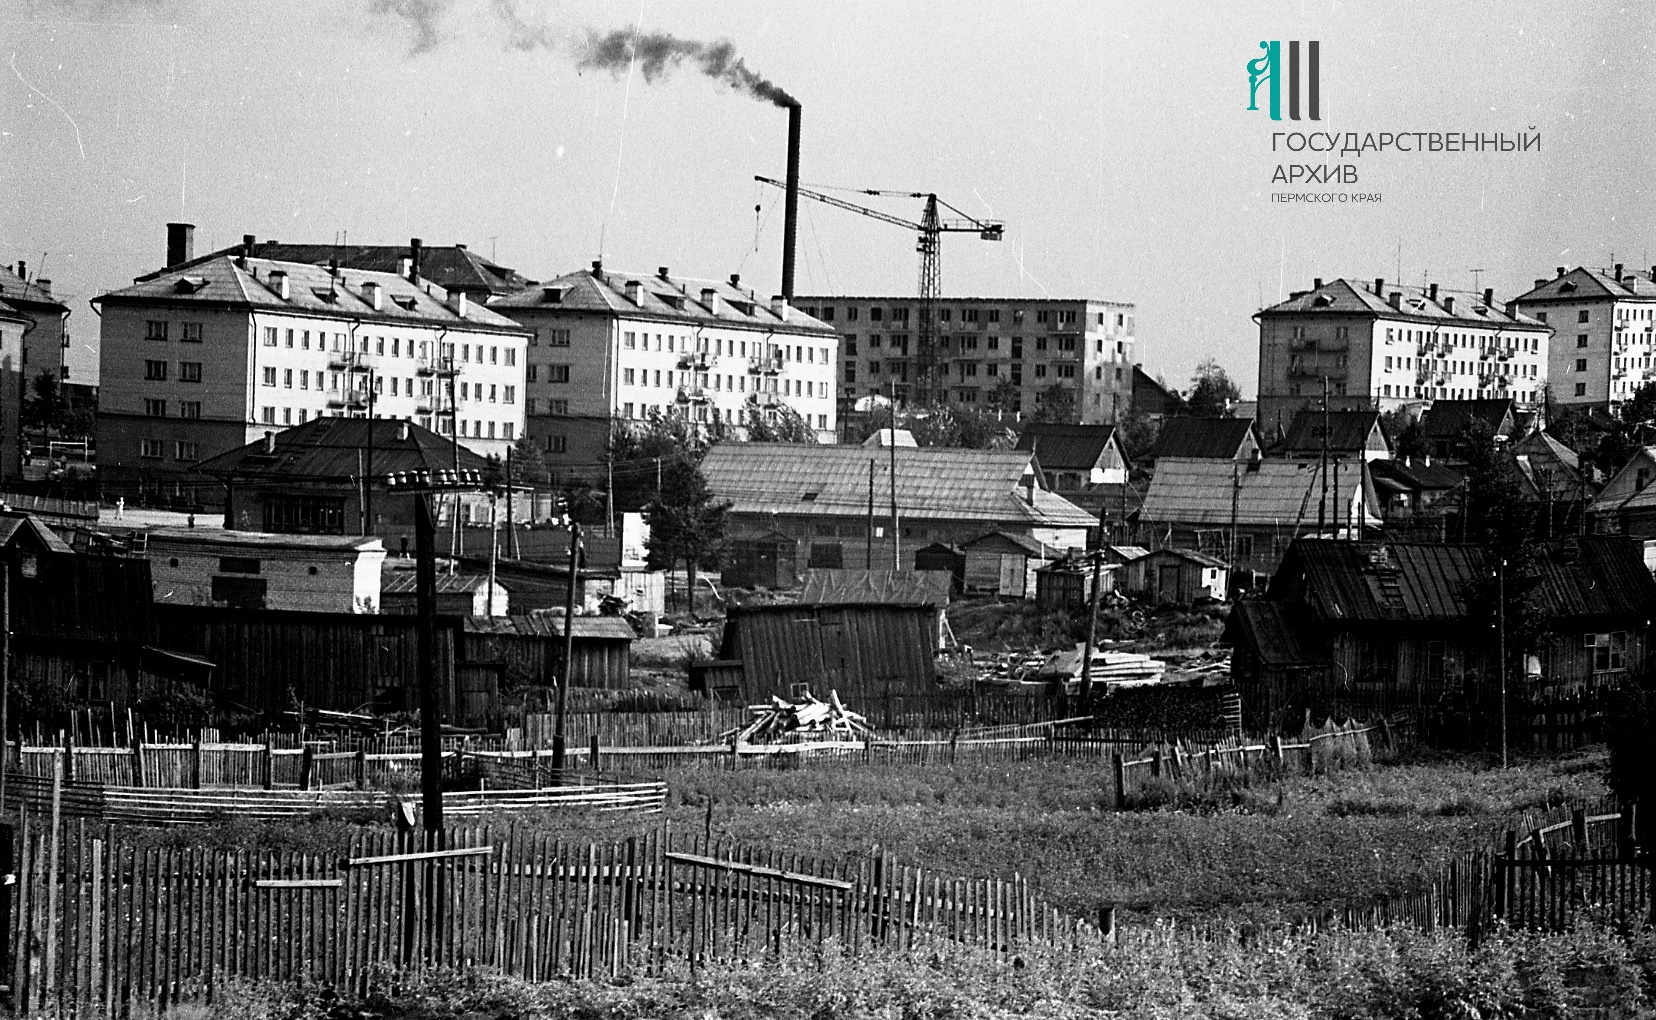 Виднеющиеся вдали дома находятся на улице Вильямса, перед ними можно рассмотреть старый рынок и огороды. Фото сделано летом 1962 года